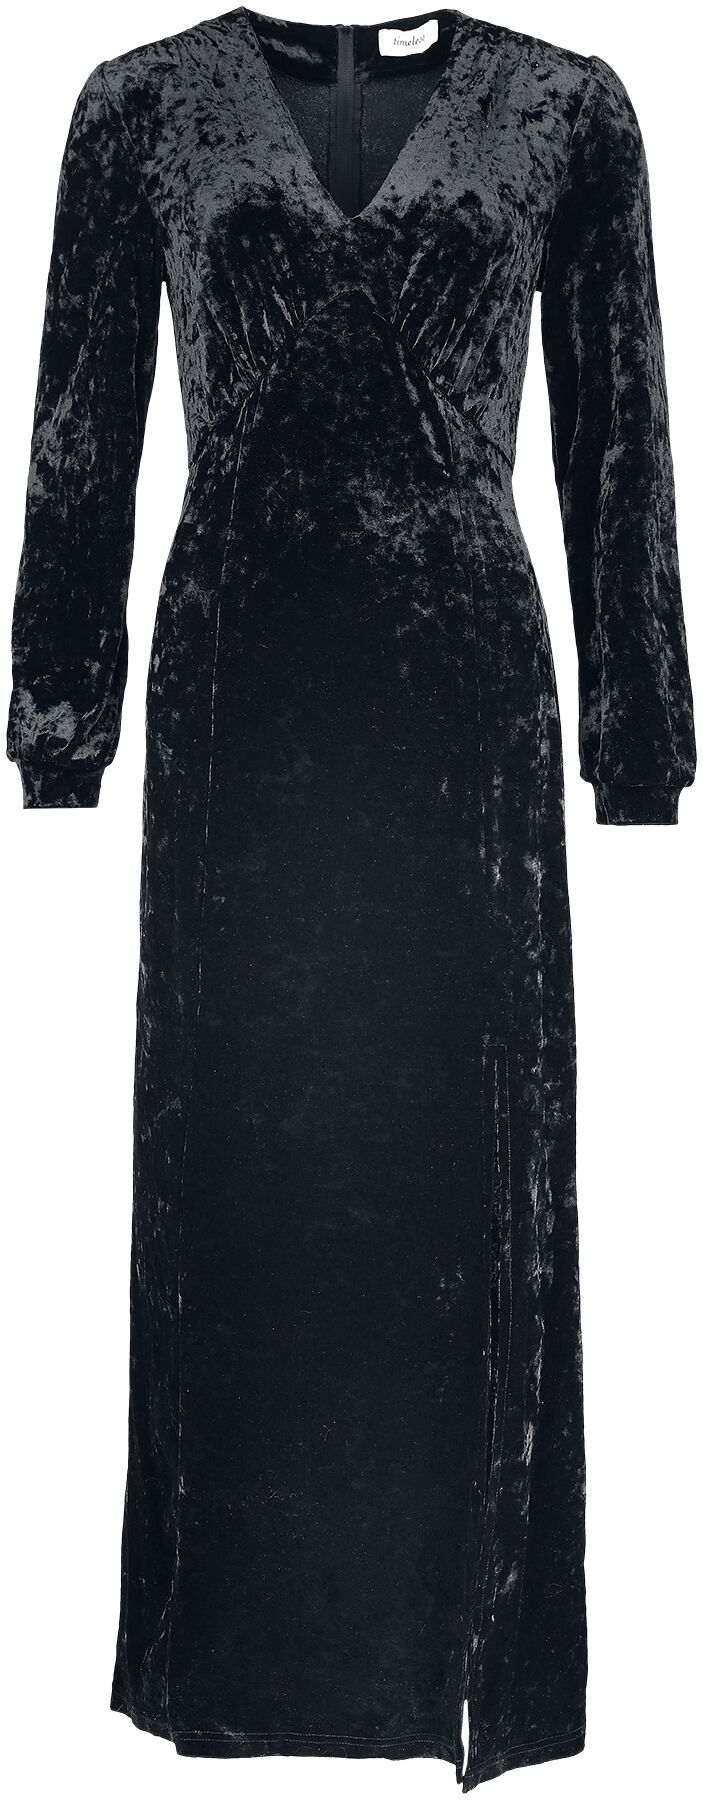 Timeless London - Rockabilly Kleid lang - Miley Black Dress - XS bis L - für Damen - Größe S - schwarz